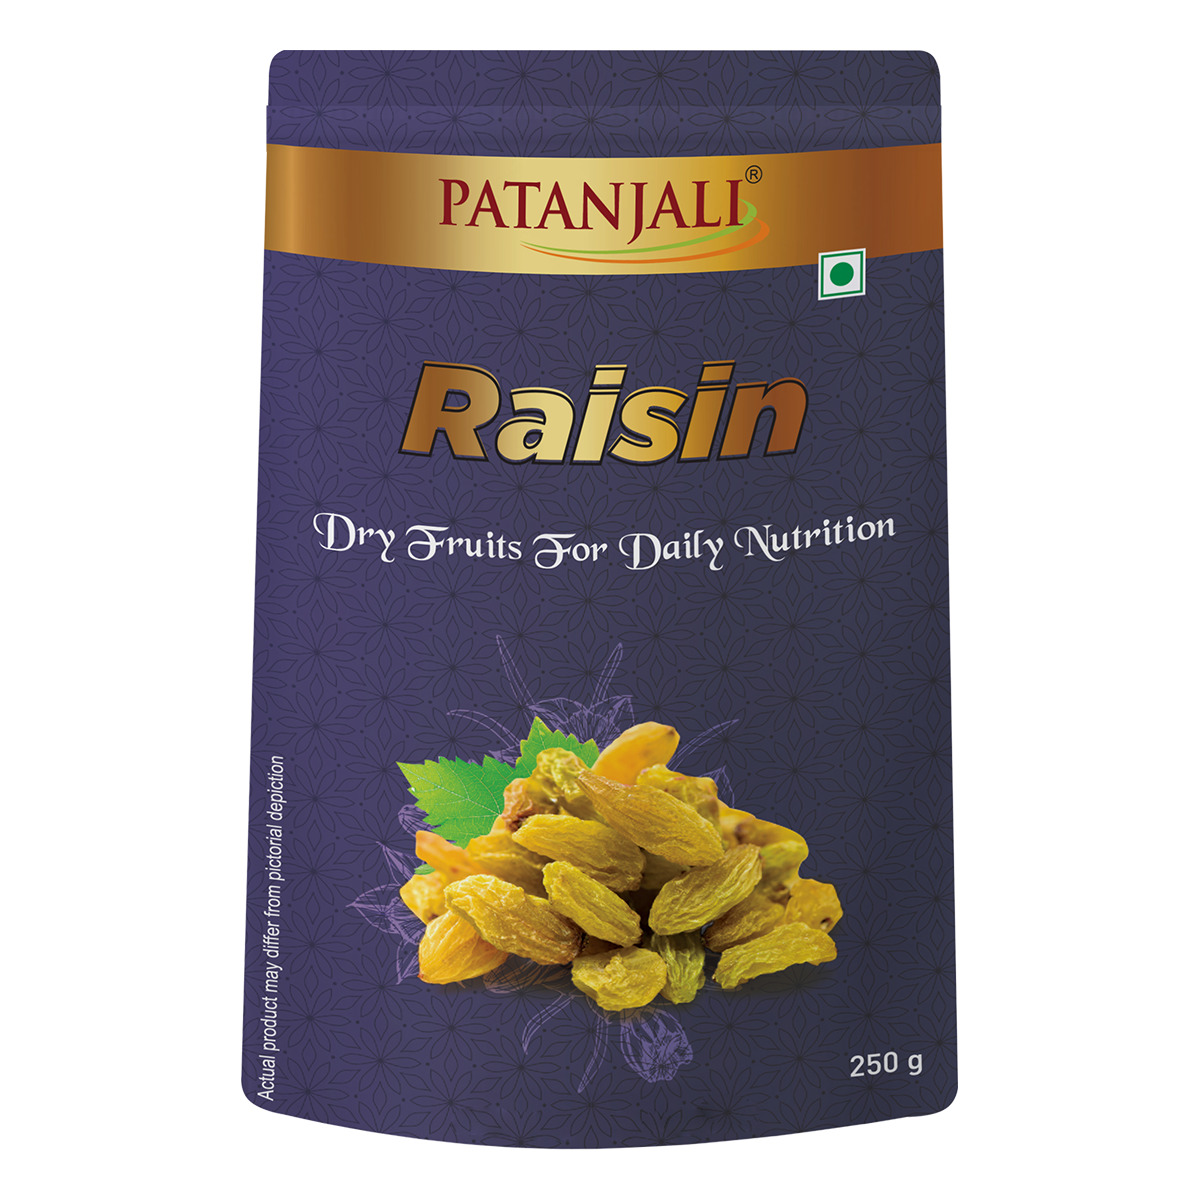 Patanjali Raisins (Kishmish)